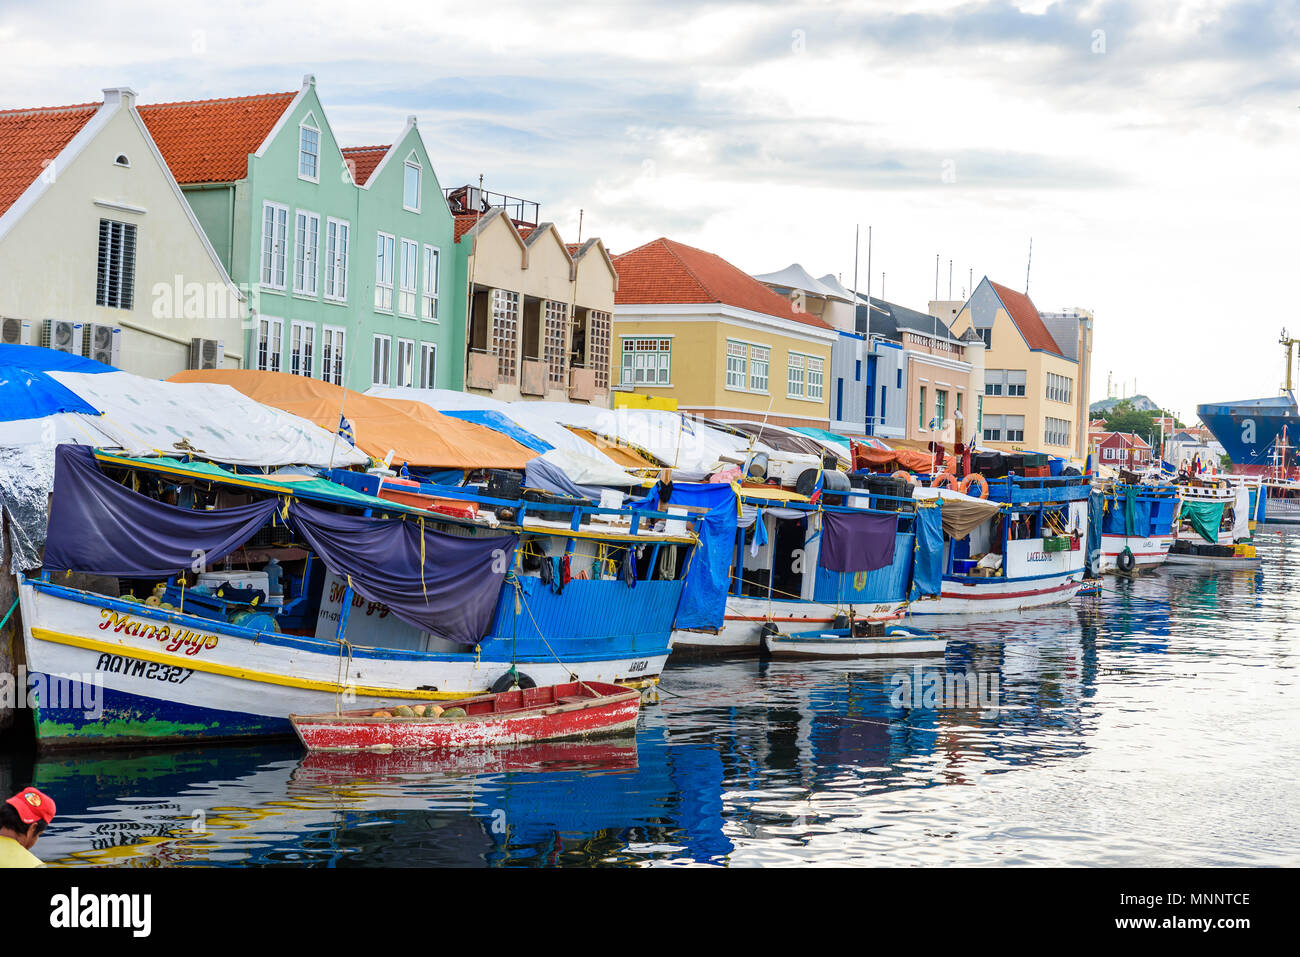 Gli edifici colorati in Willemstad downtown, Curacao, Antille Olandesi, una piccola isola dei Caraibi - destinazione di viaggio per navi da crociera o vacanza Foto Stock